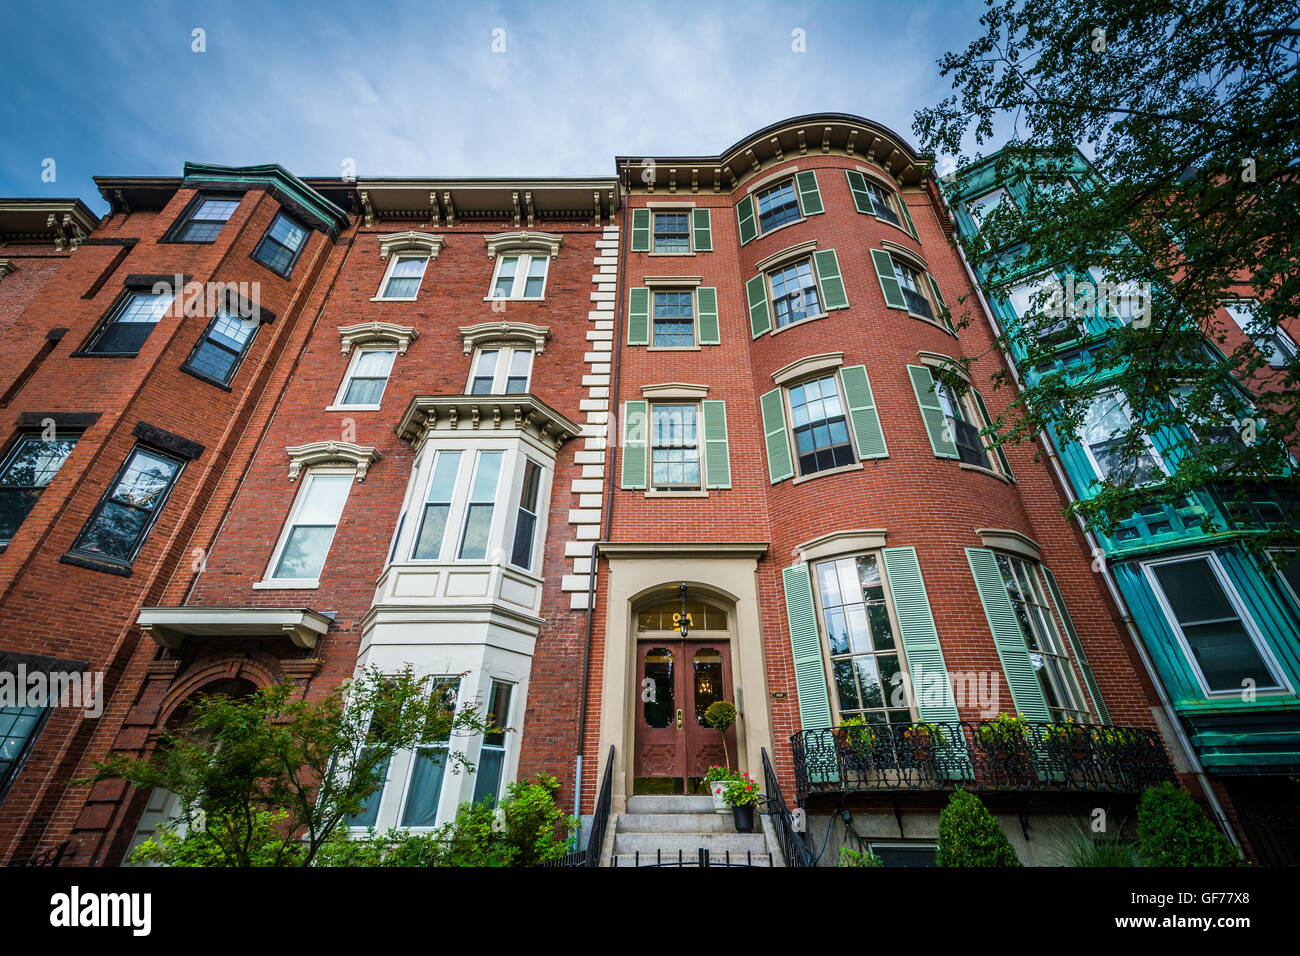 Houses in Bunker Hill, Charlestown, Boston, Massachusetts. Stock Photo